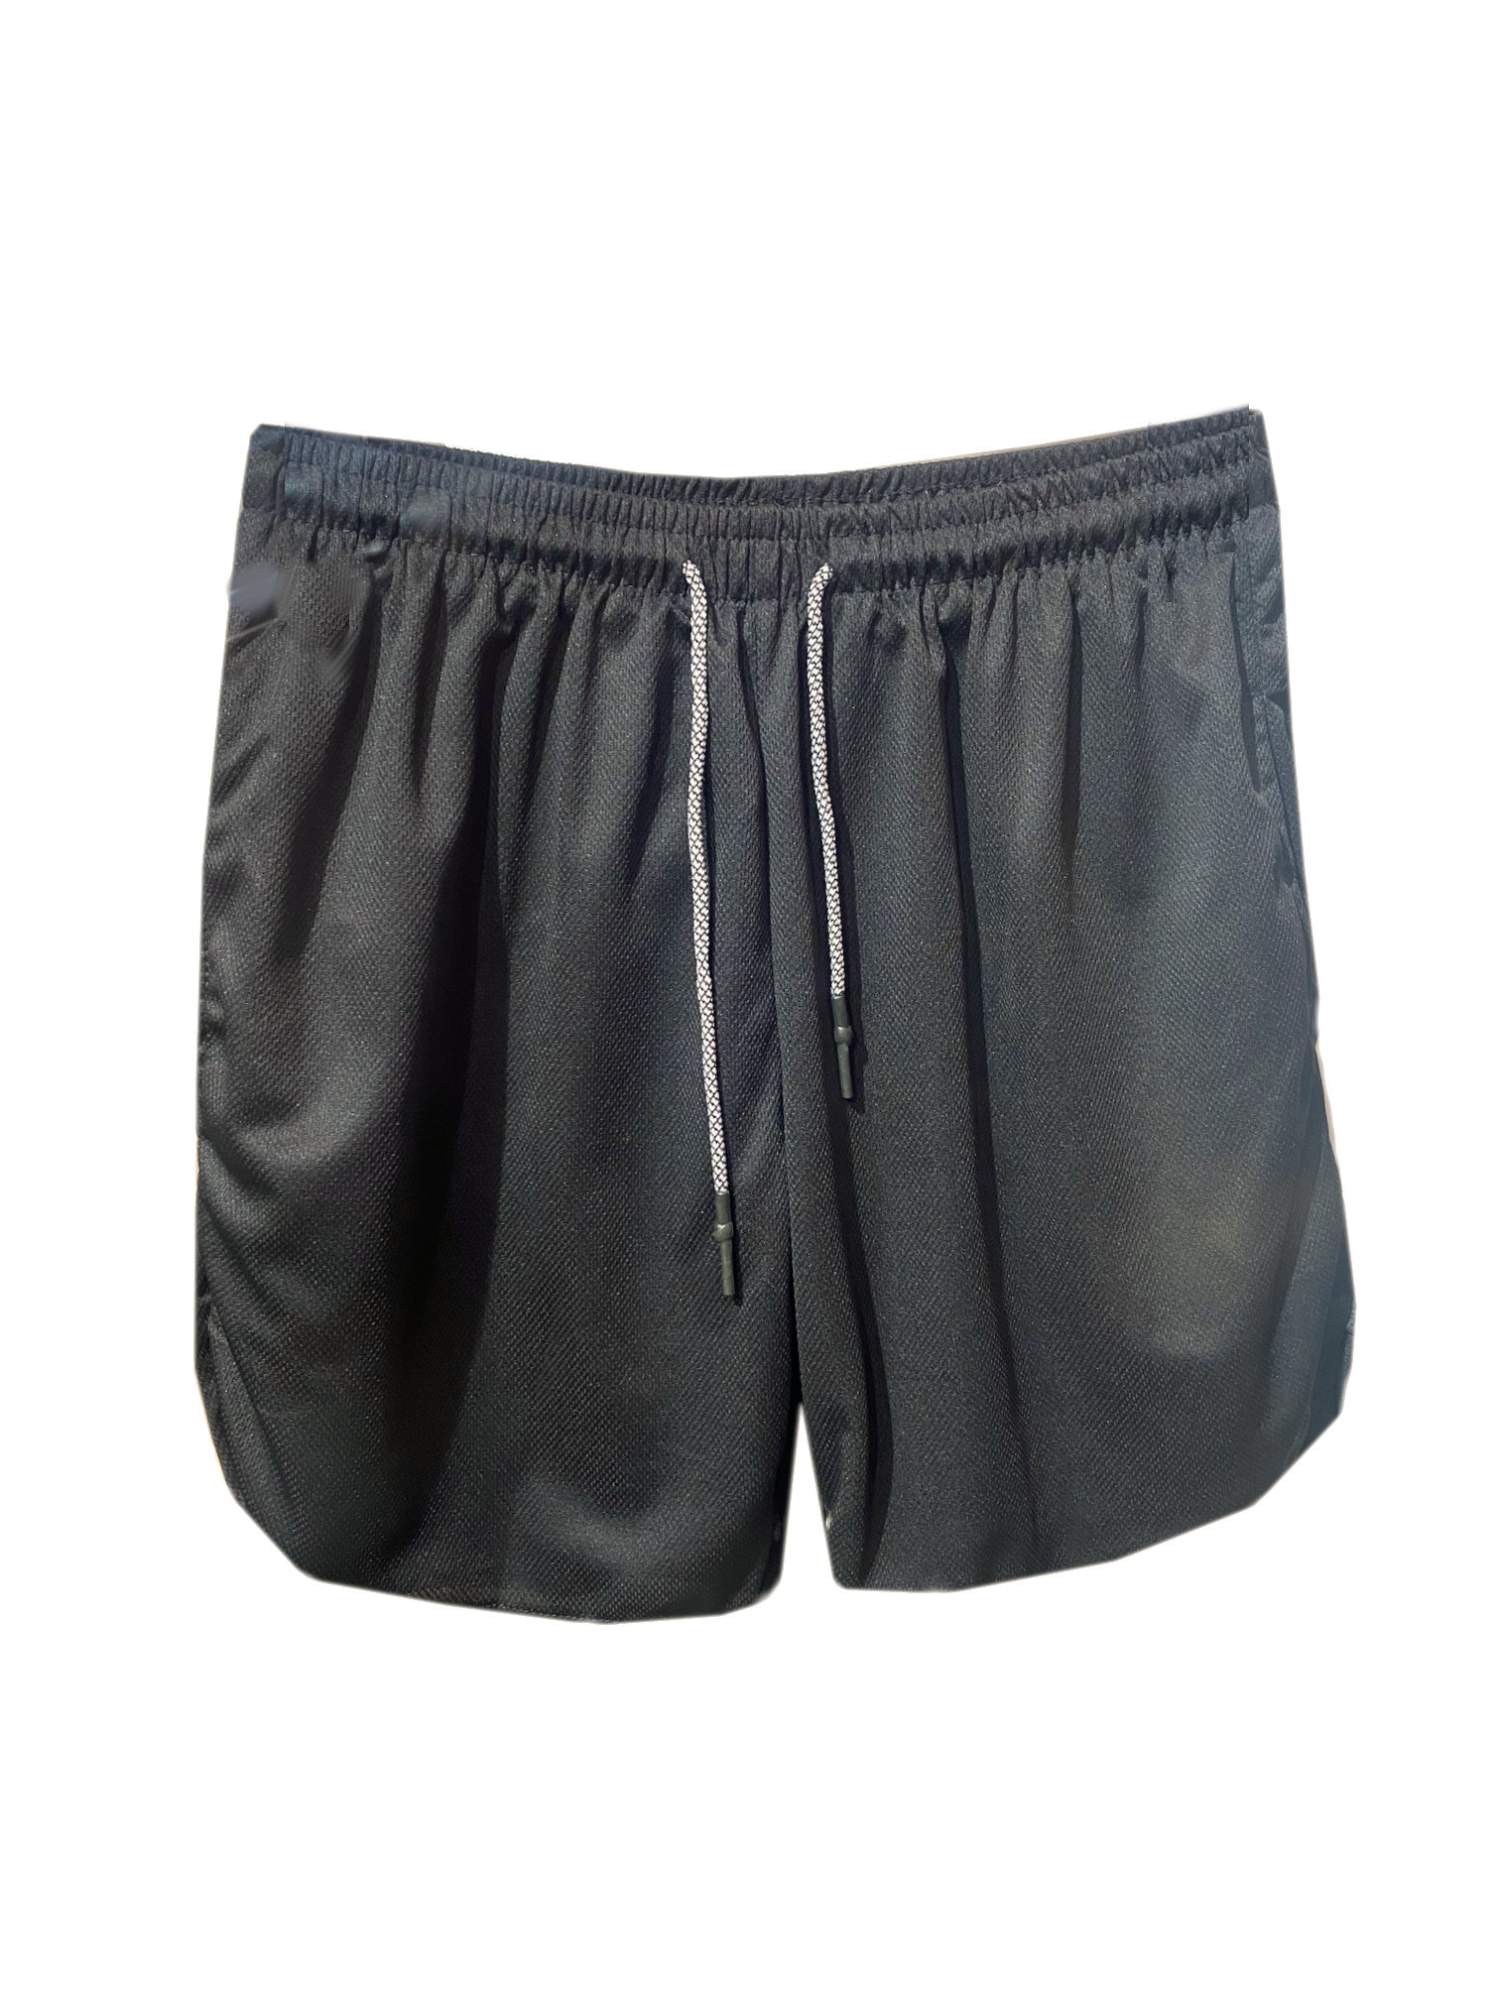 Спортивные шорты мужские Б002Ч/Б черные 50 RU - купить в Dandy_club, цена на Мегамаркет